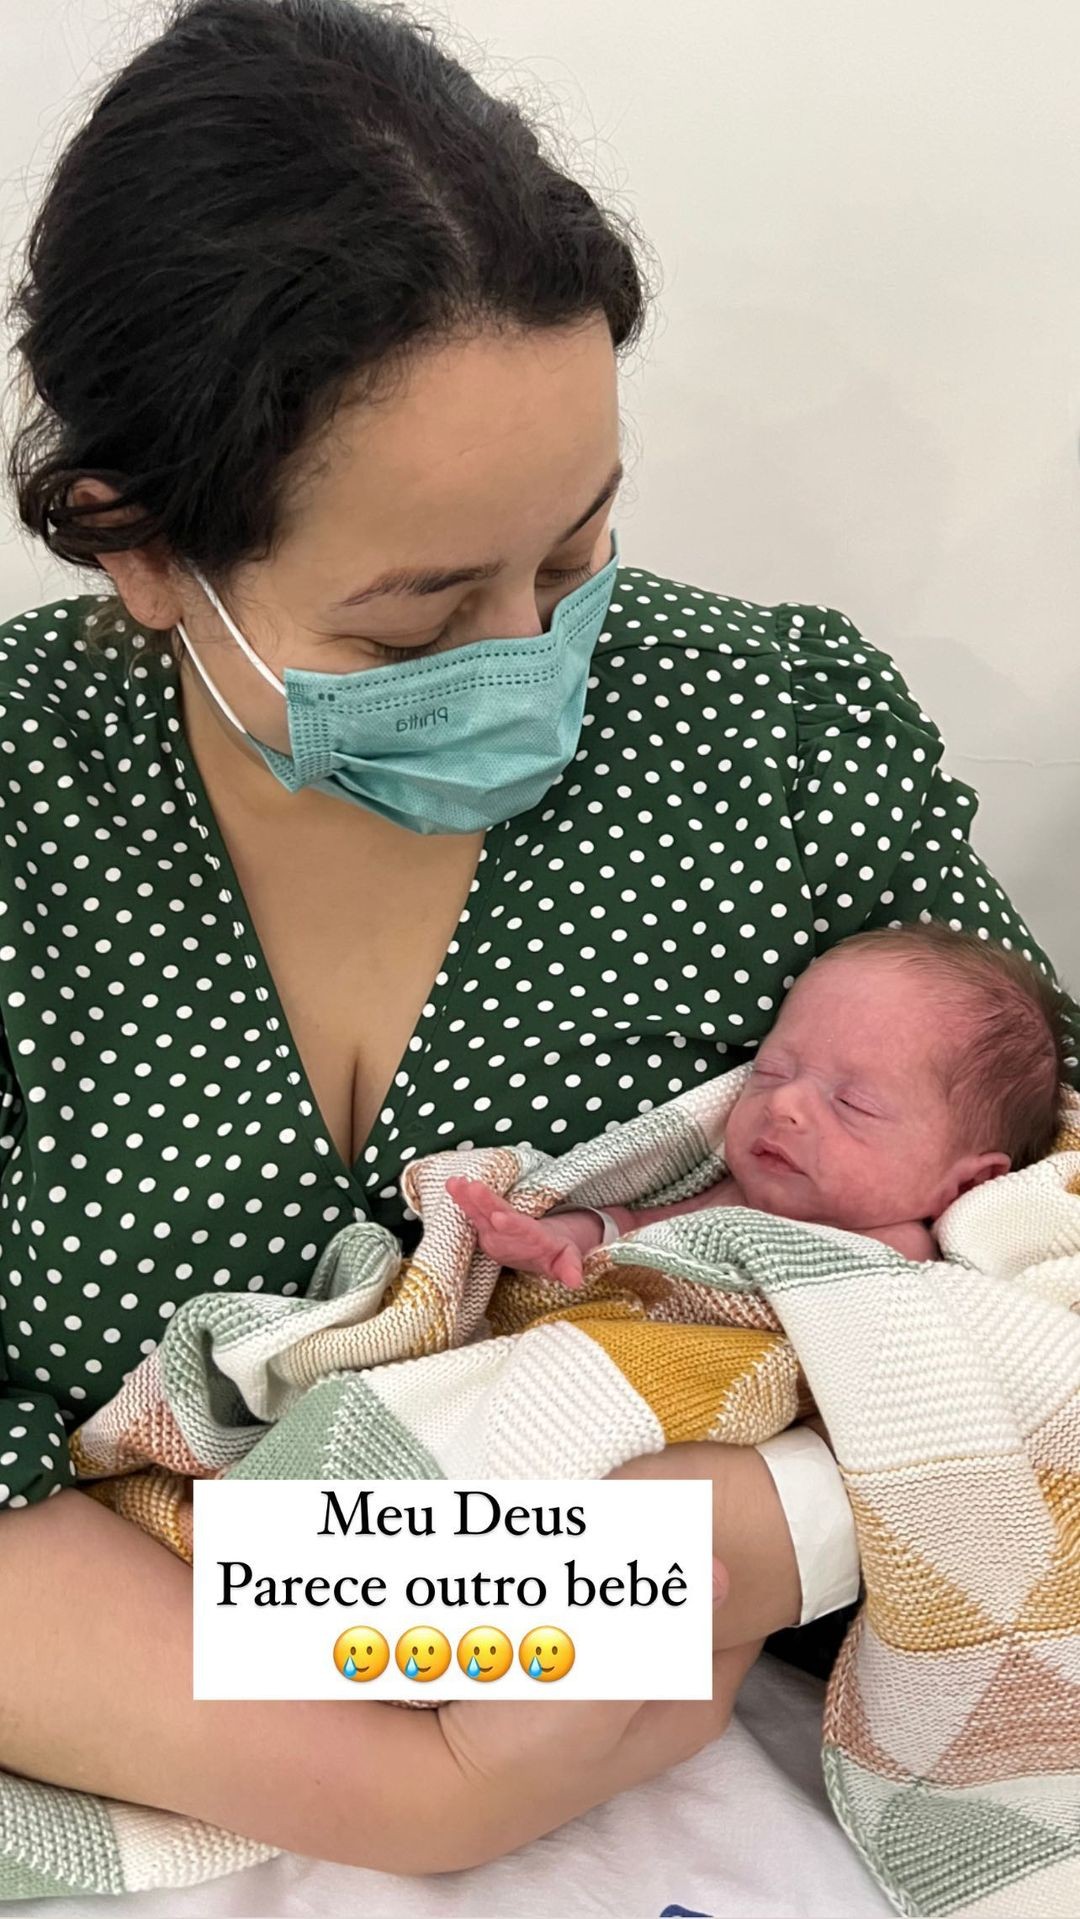 Camila Monteiro se emociona ao ver filhos prematuros sem sonda (Foto: Reprodução/Instagram)